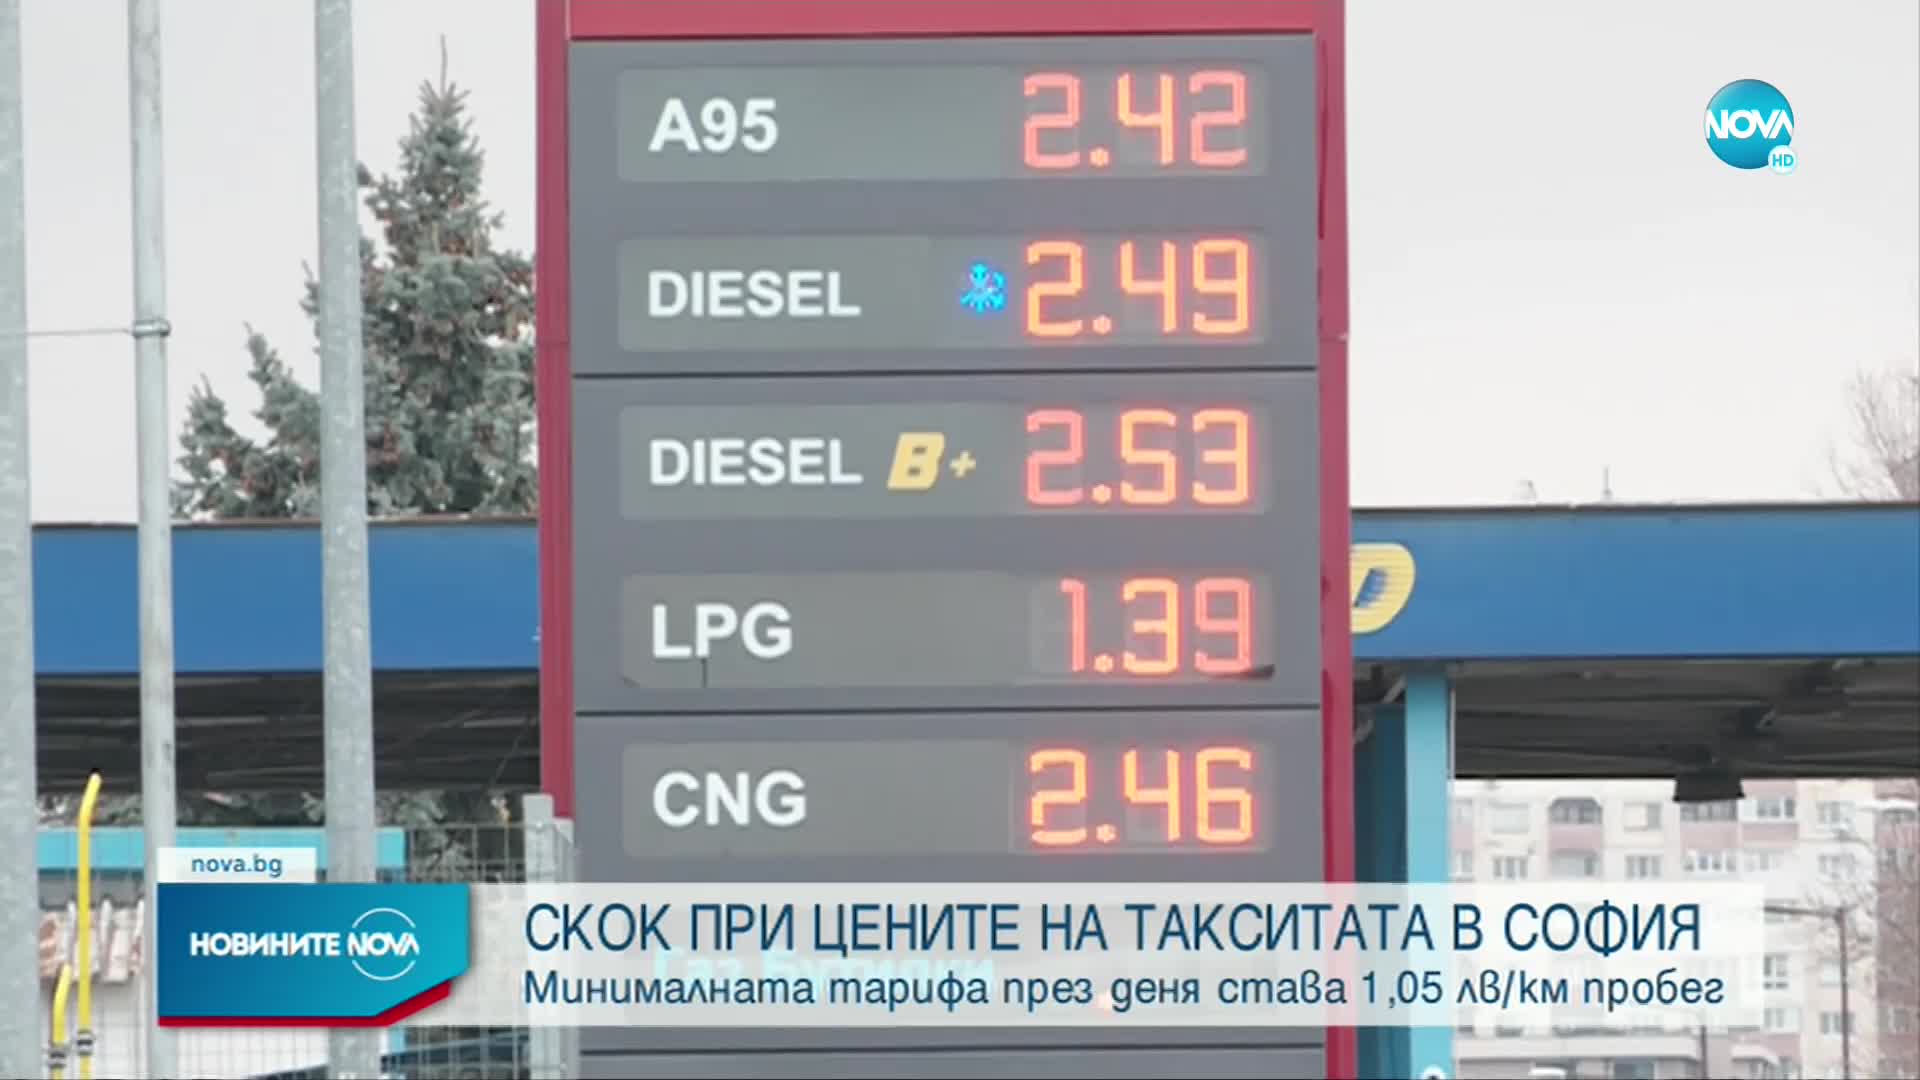 Над 30% скок в цените на такситата в София